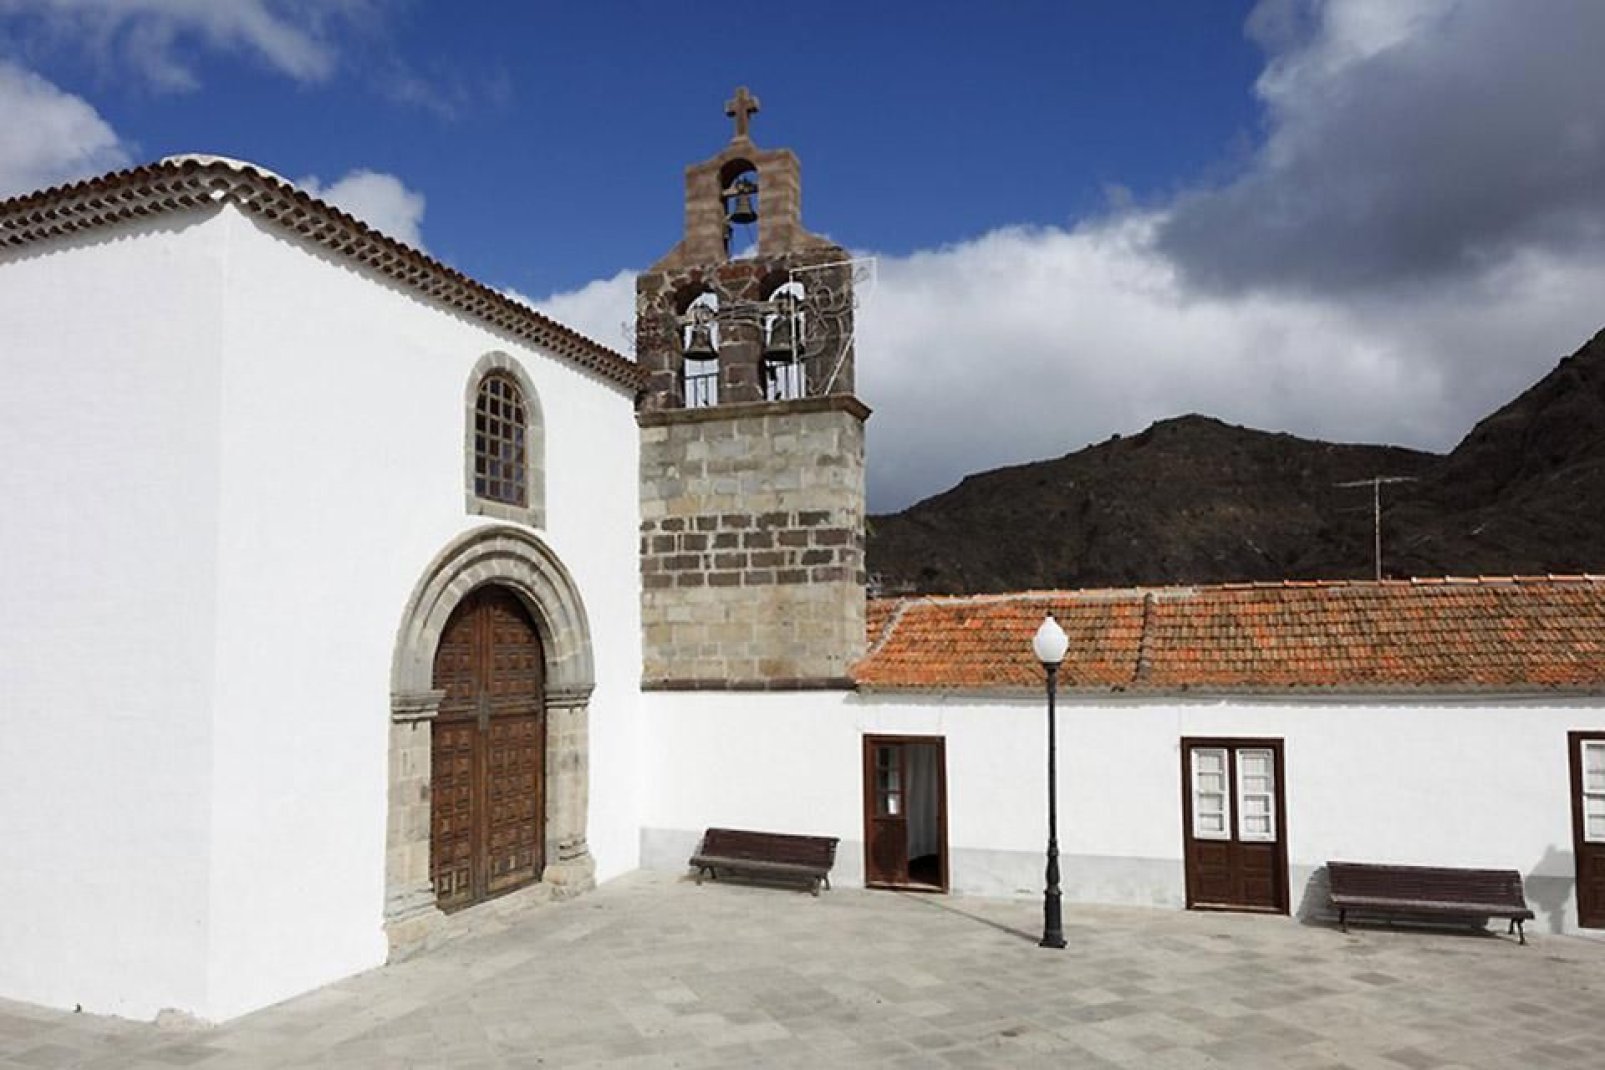 Potrete visitare alcuni luoghi di interesse come la Chiesa di Santo Domingo, il Mulino ad acqua o il Museo etnografico.